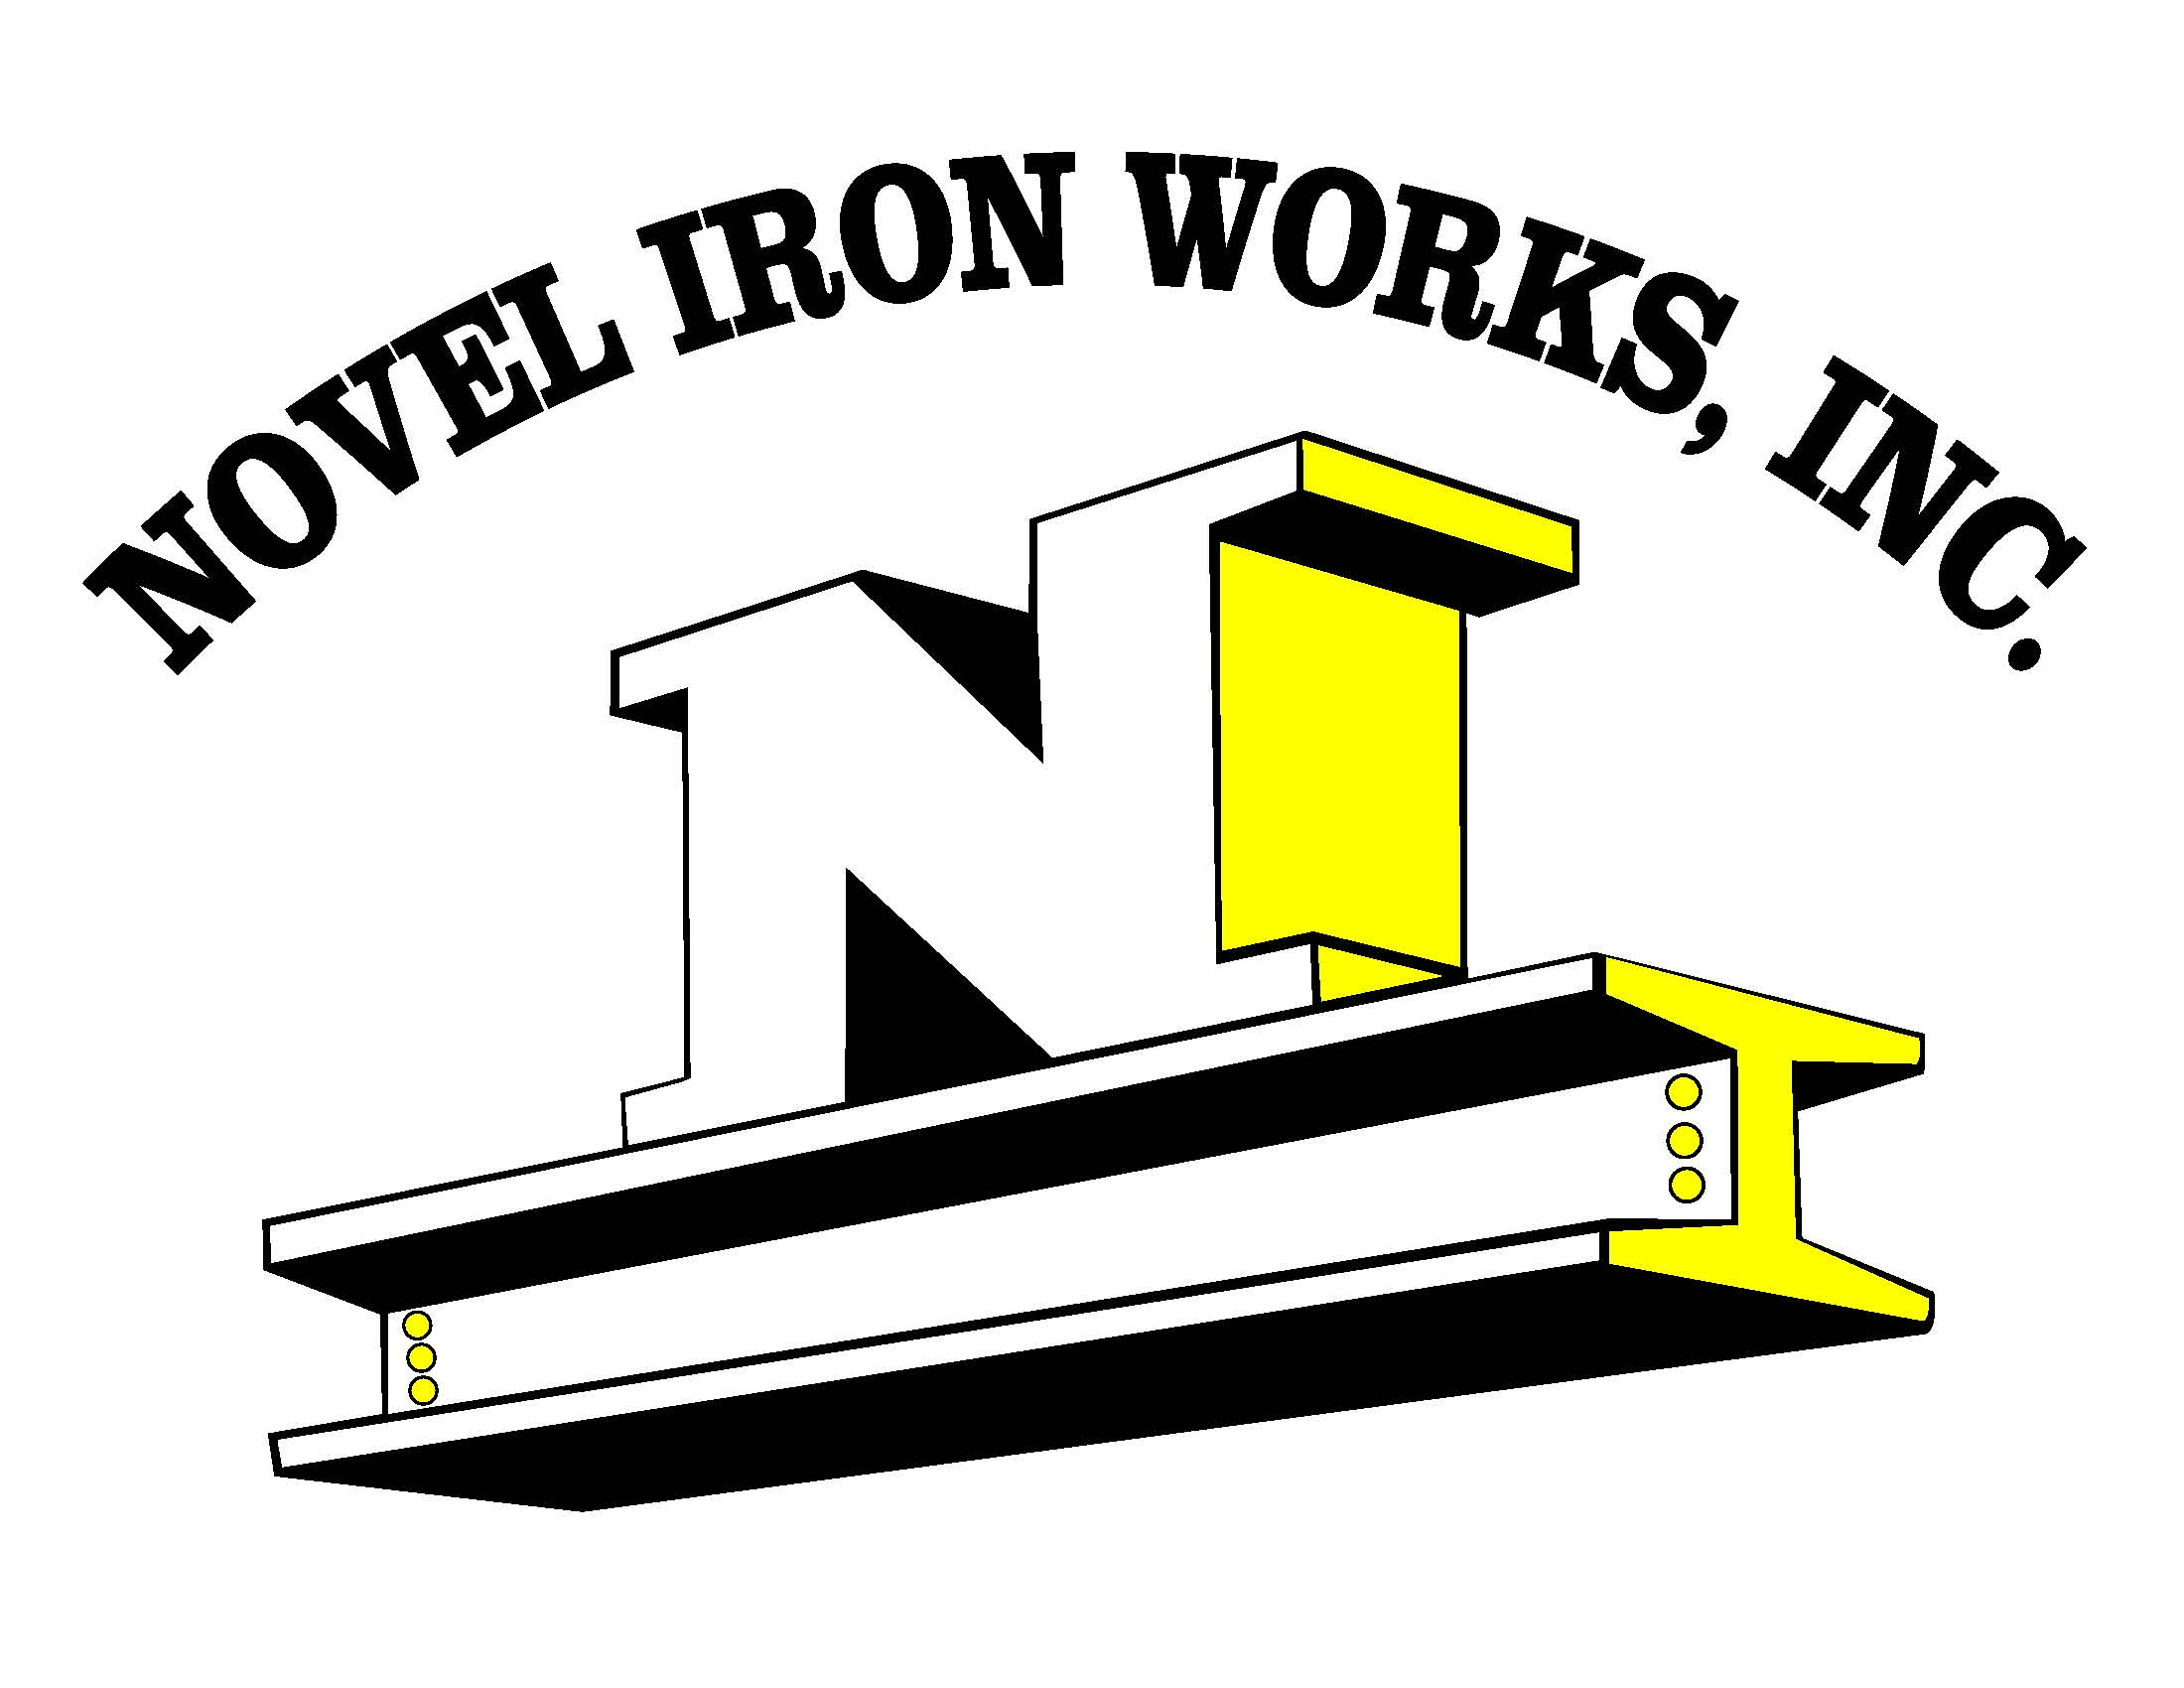 Novel Iron Works